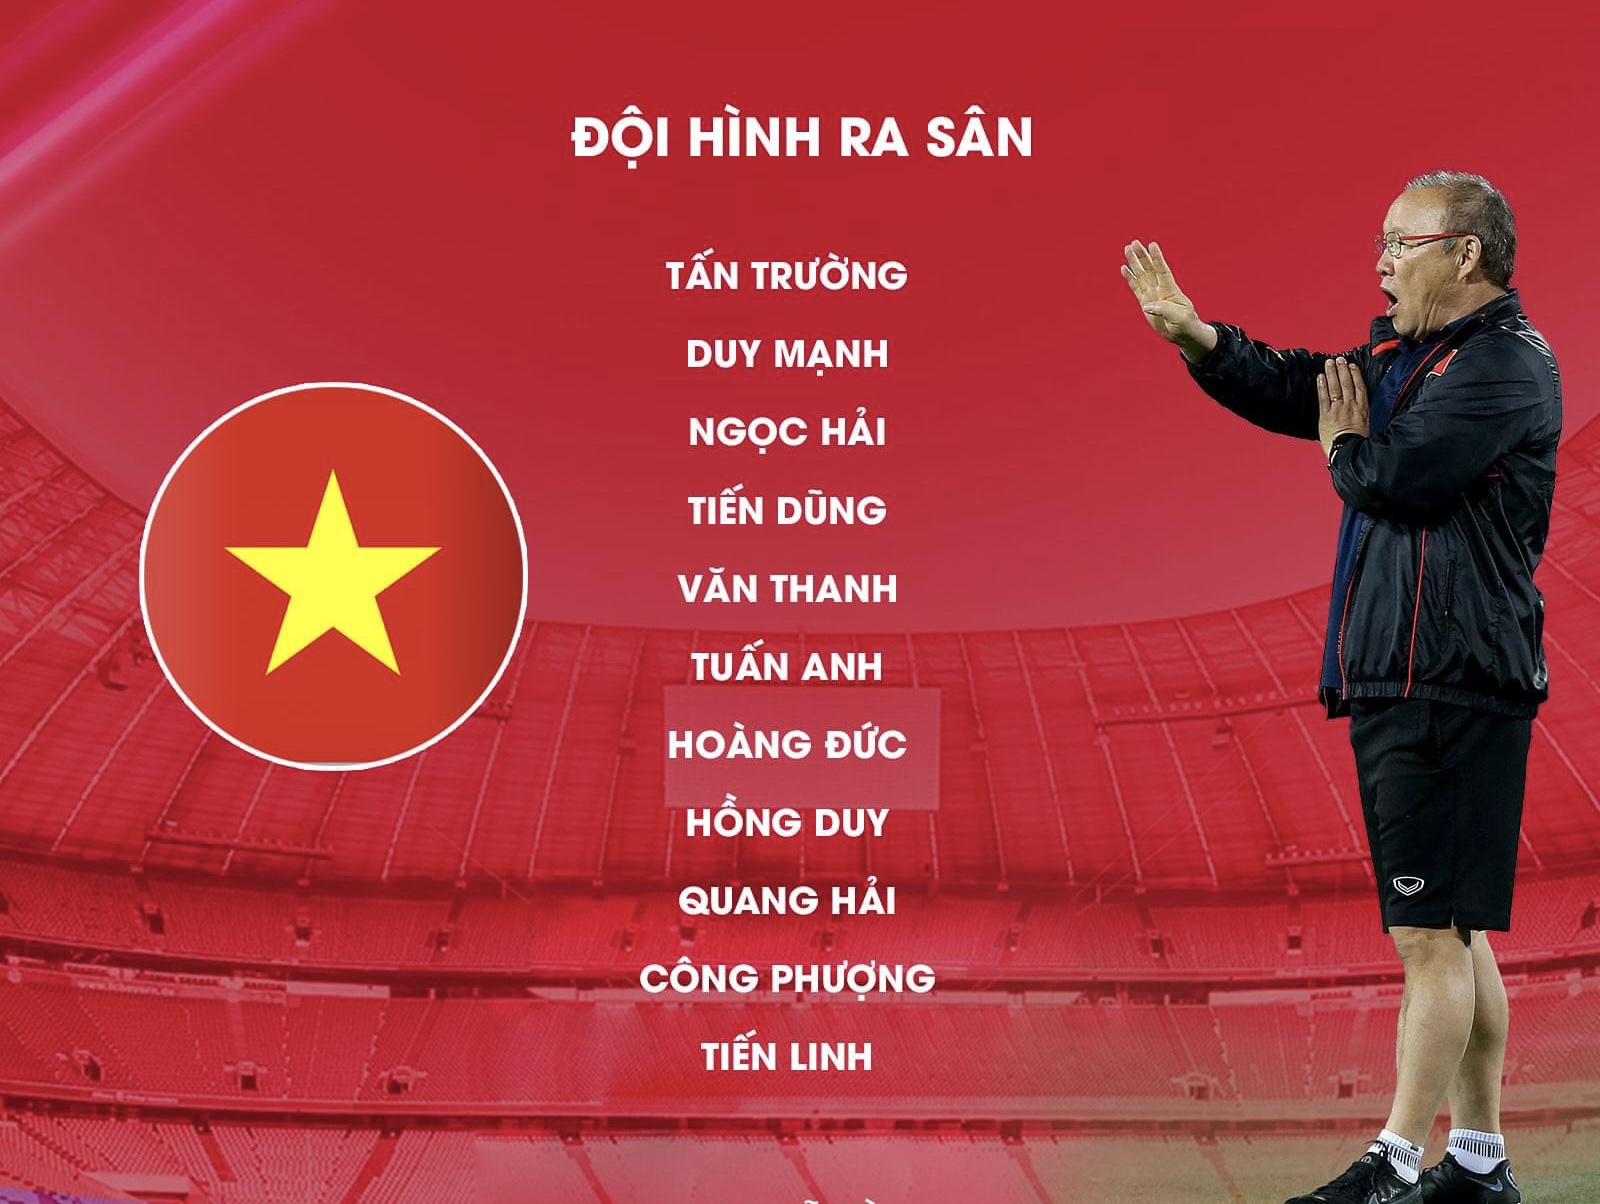 Đội hình ra sân chính thức Việt Nam vs Nhật Bản, 19h ngày 11/11 (cập nhật) - Ảnh 1